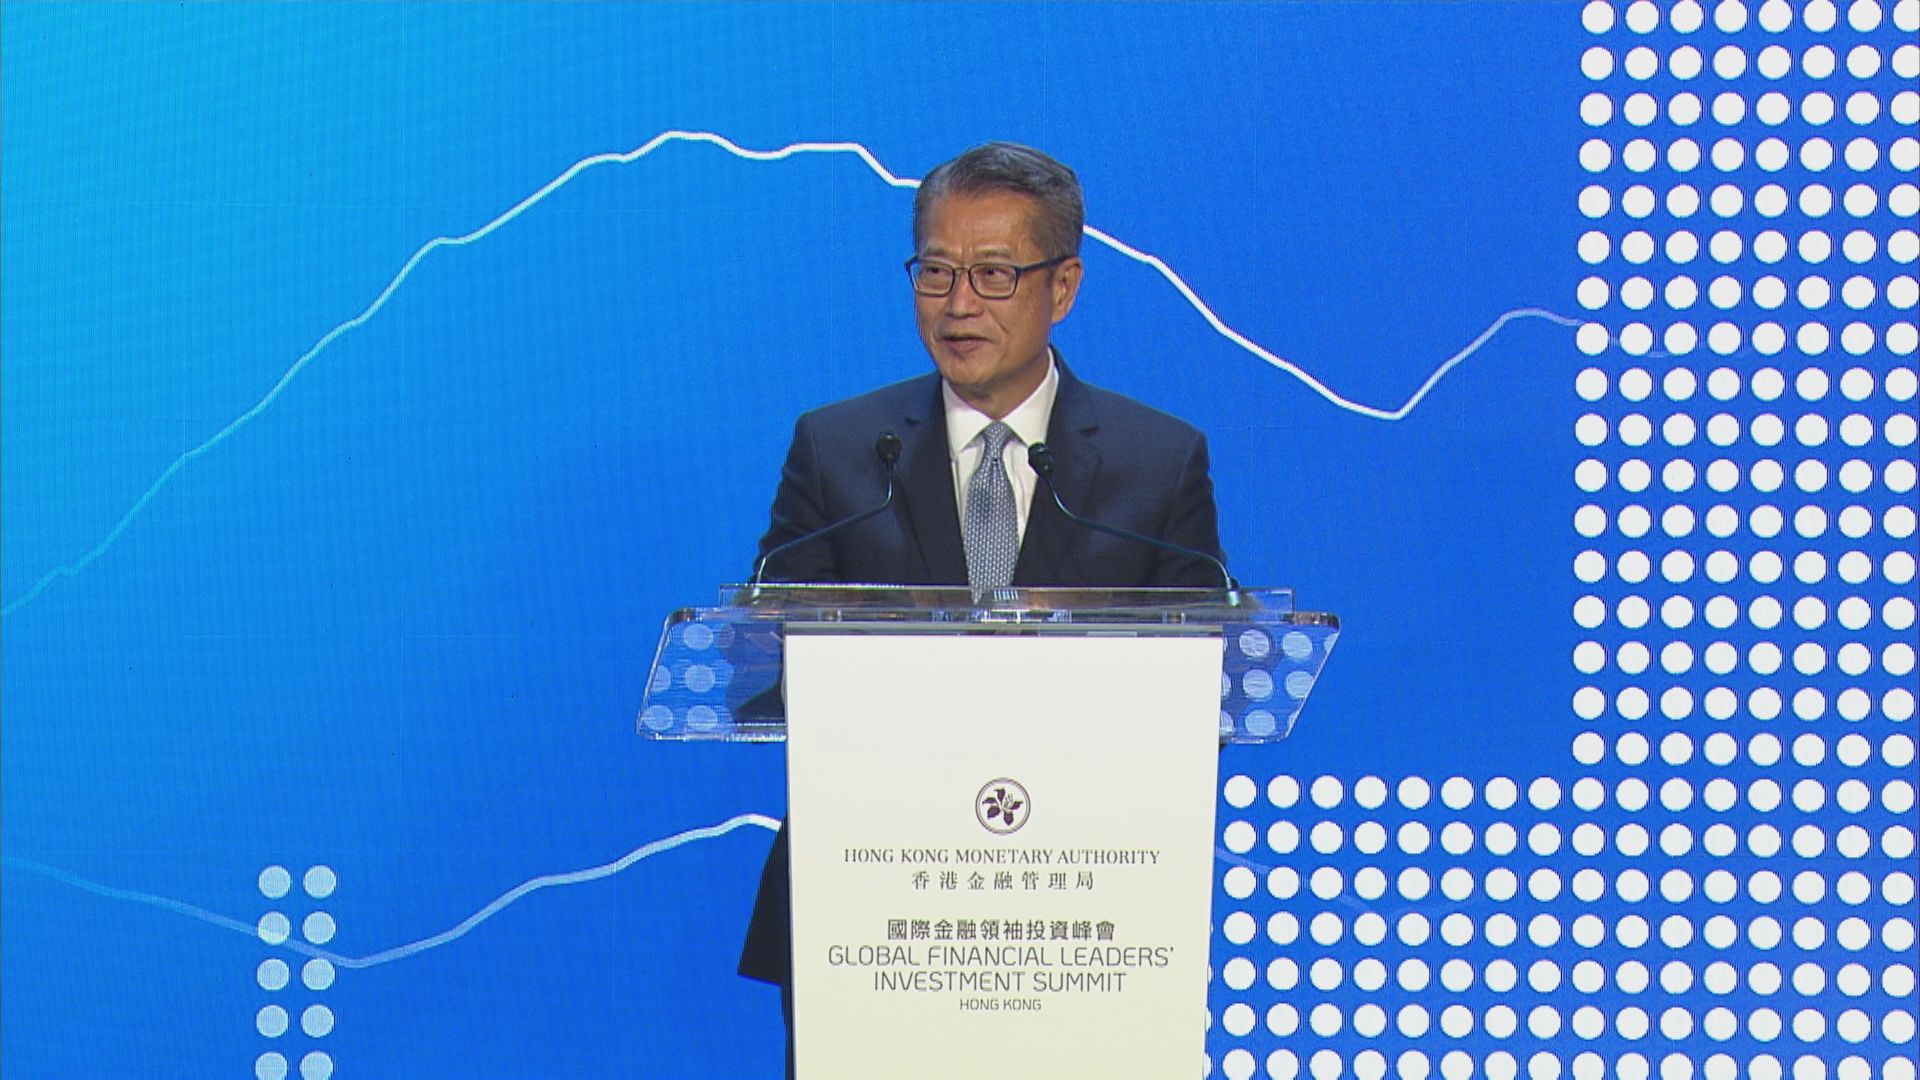 【金融峰會】陳茂波:港作為國際金融中心潛力、機會十分大